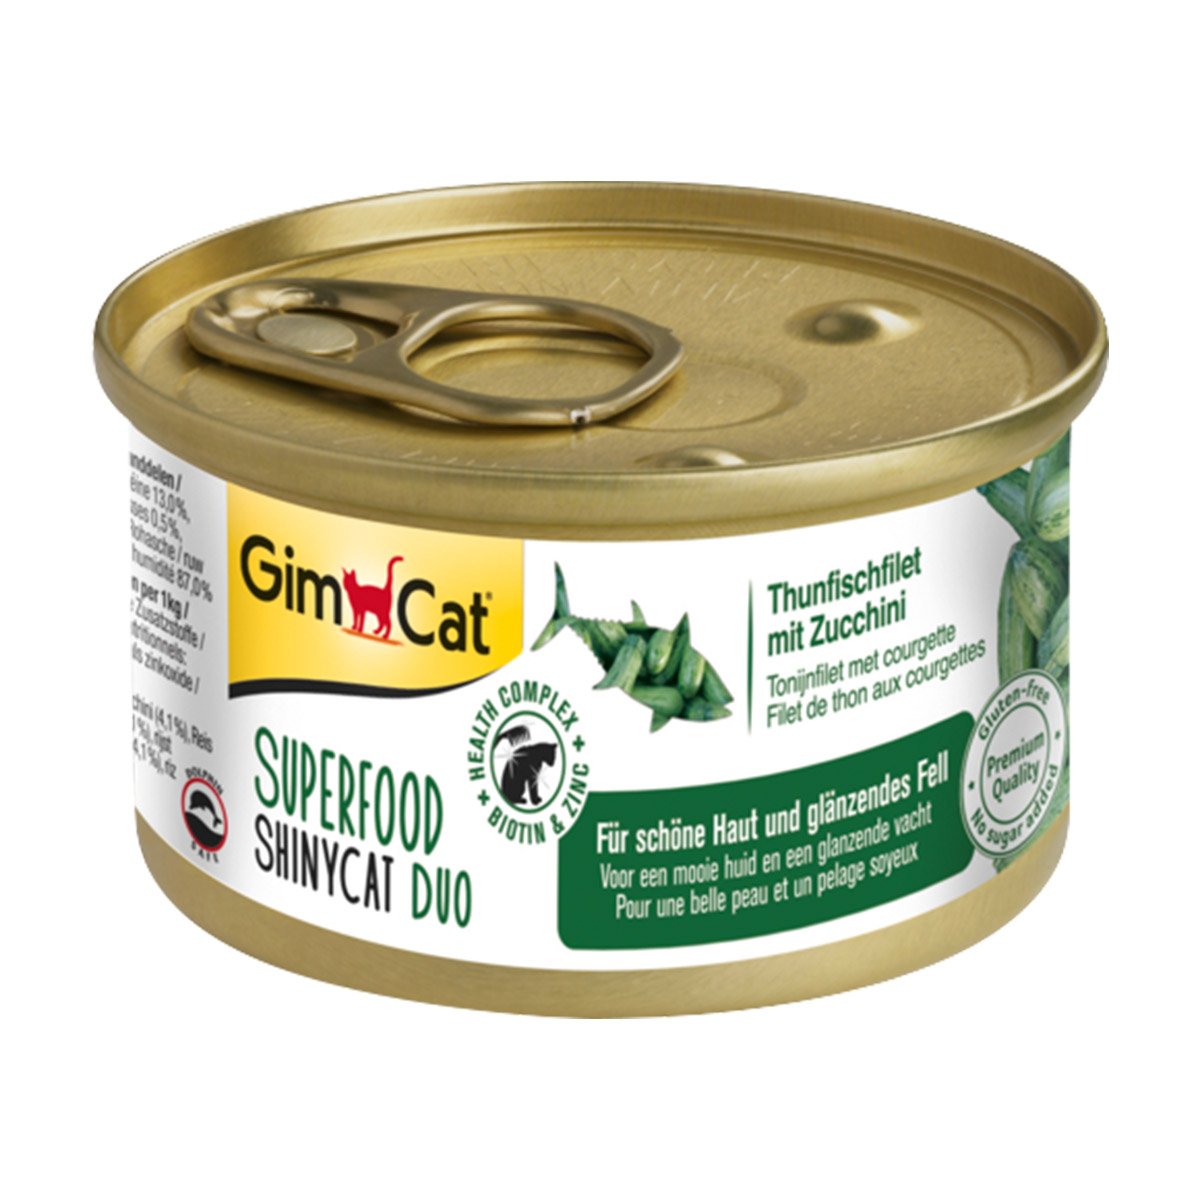 GimCat Superfood ShinyCat Duo tuňákový filet s cuketou 24 × 70 g